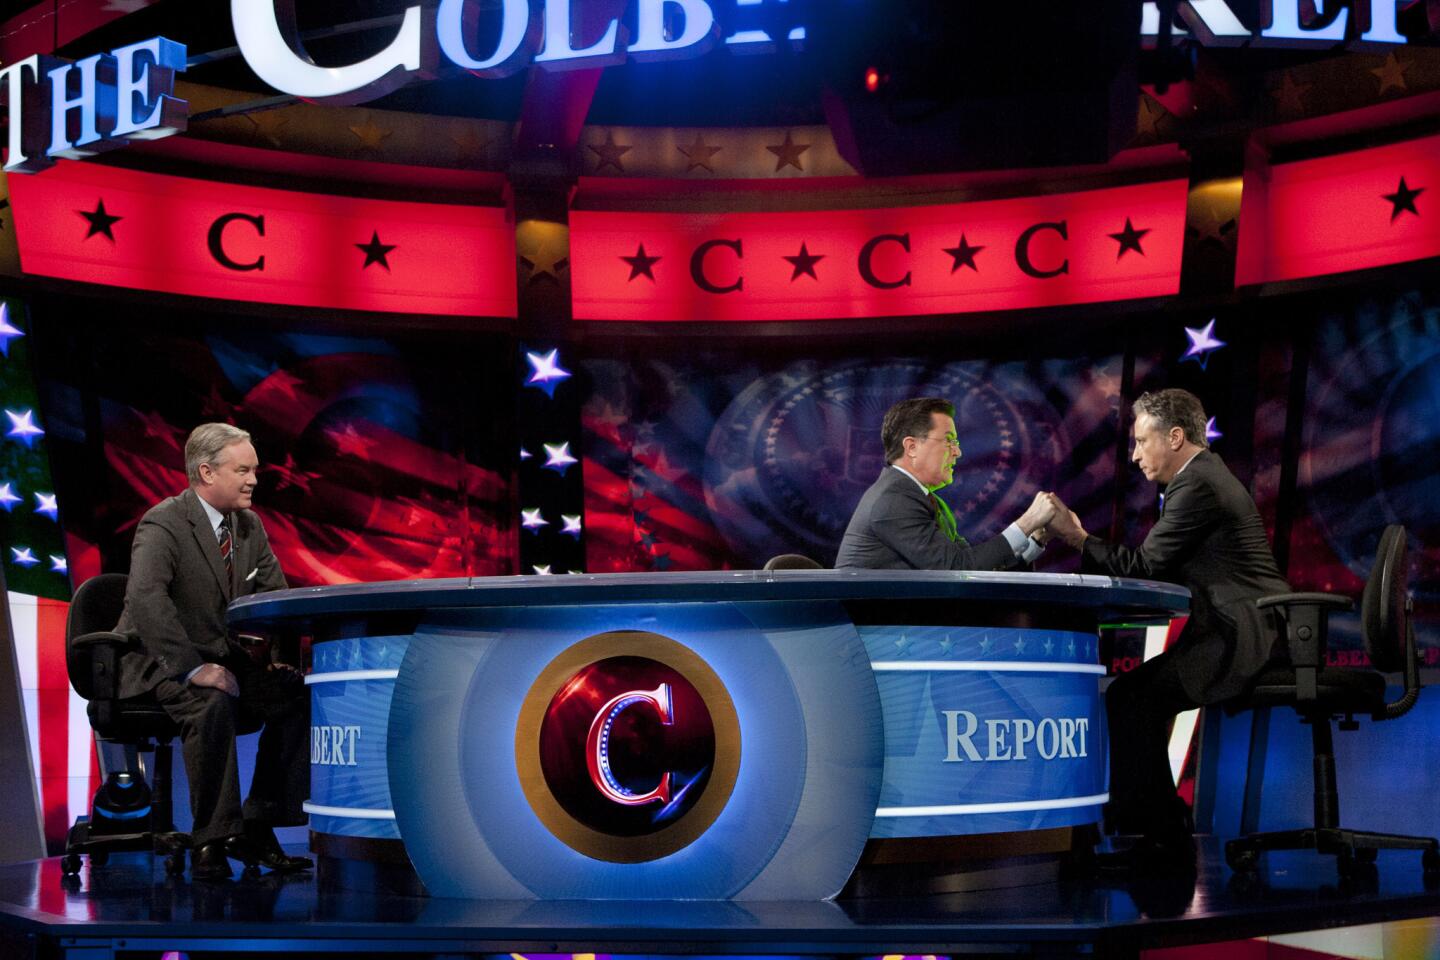 "The Colbert Report"